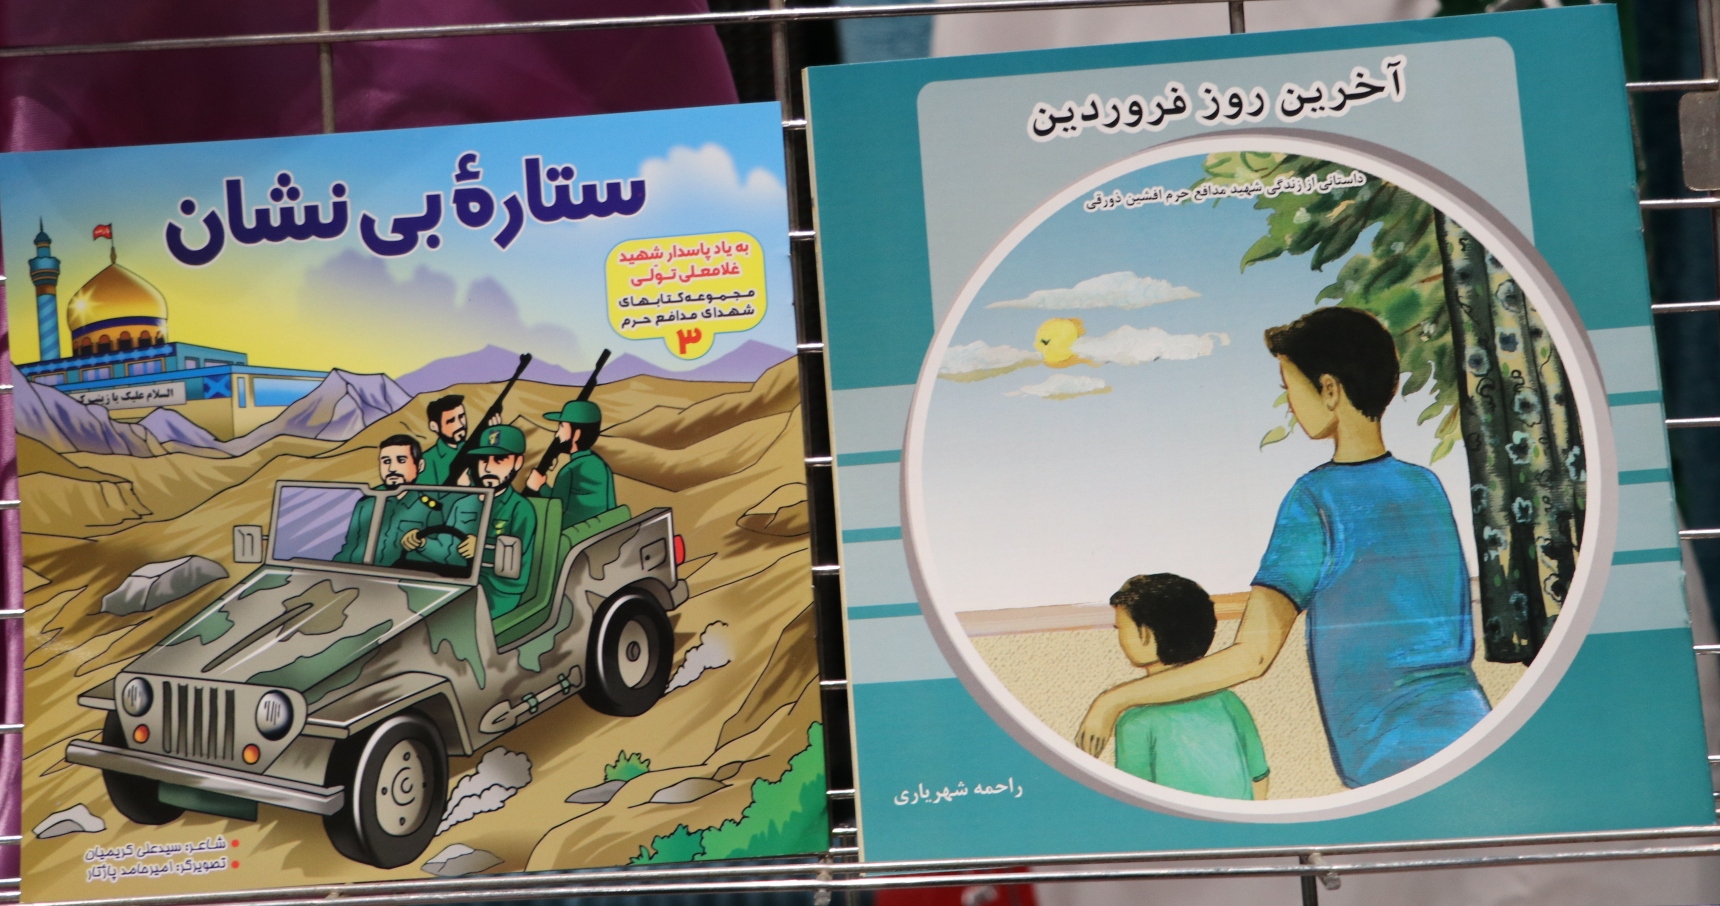 رونمایی از دو کتاب با موضوع شهدای مدافع حرم استان برای گروه سنی کودک و نوجوان